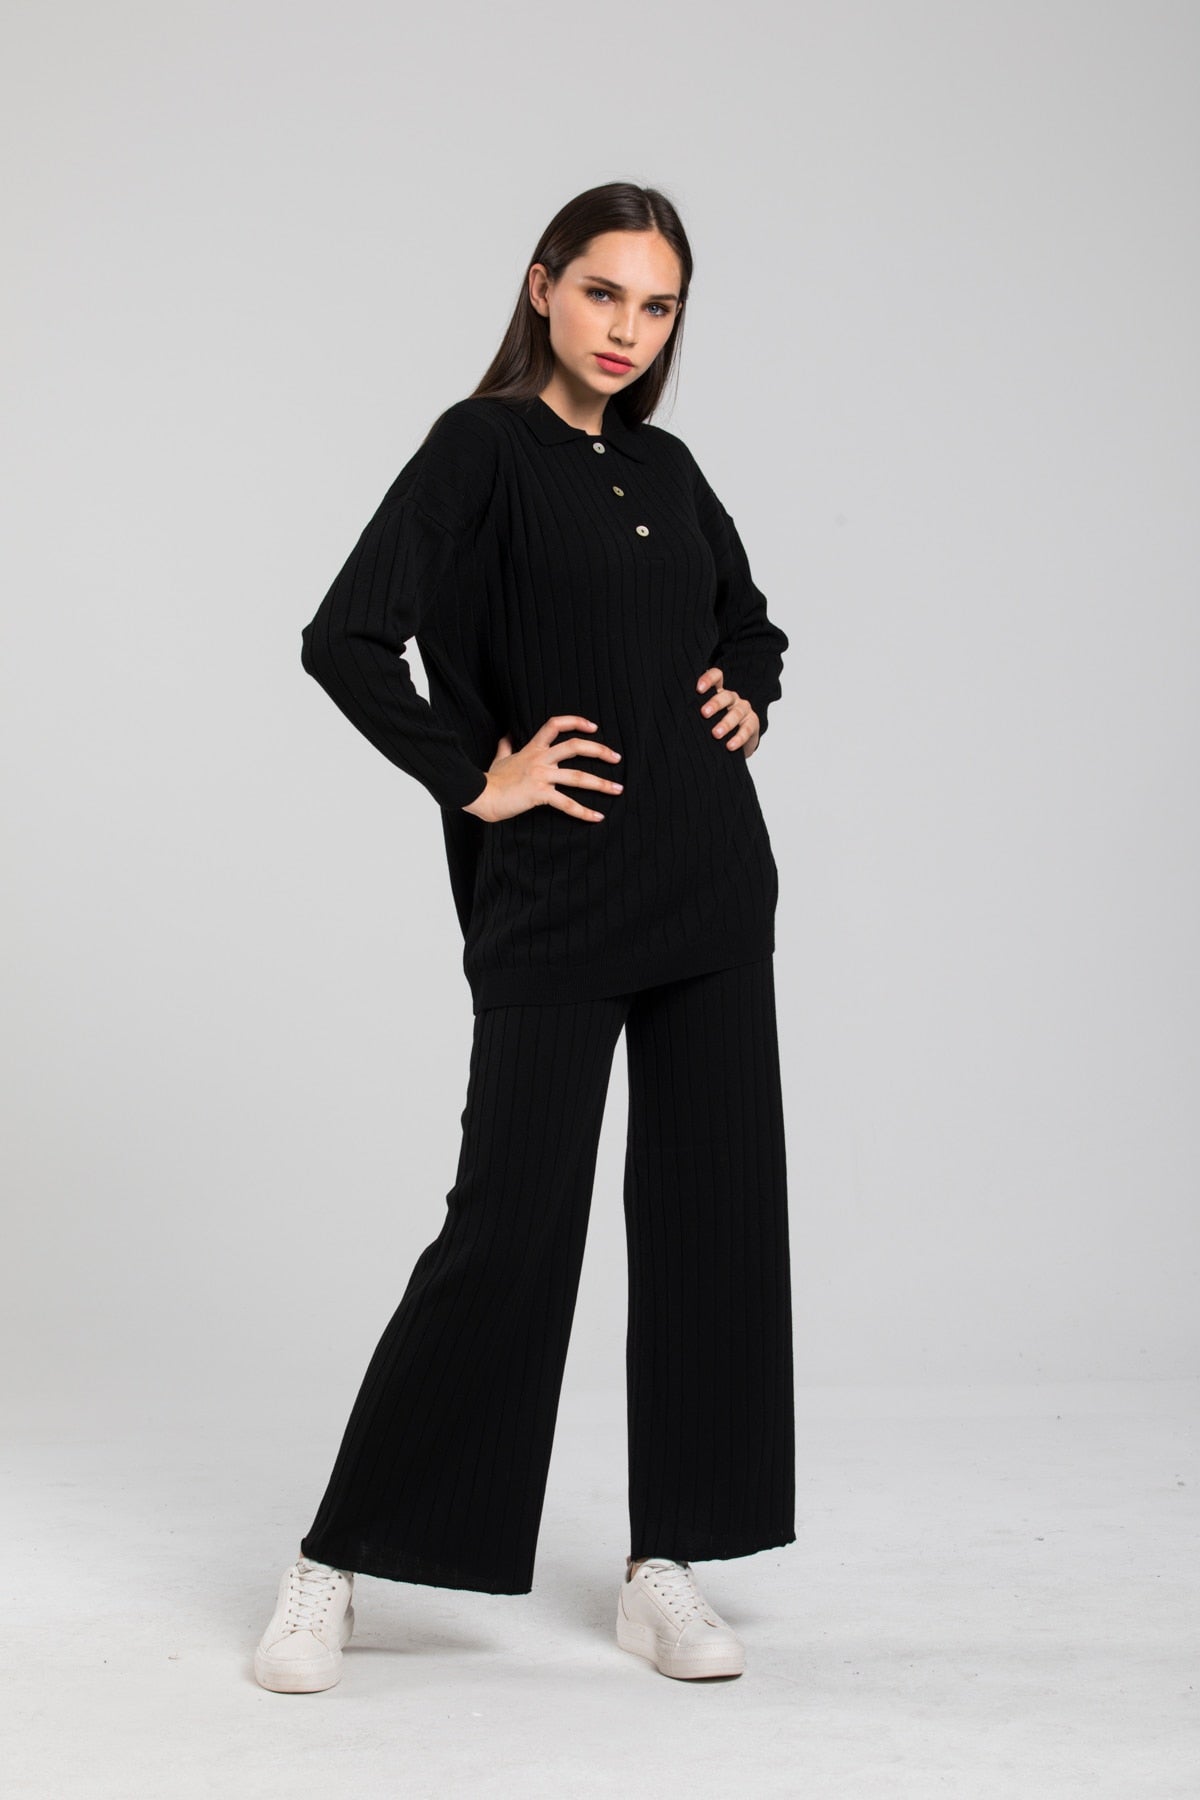 Women's Black Oversized Long Sleeve Bottom Top Knitwear Suit - Made in Turkey